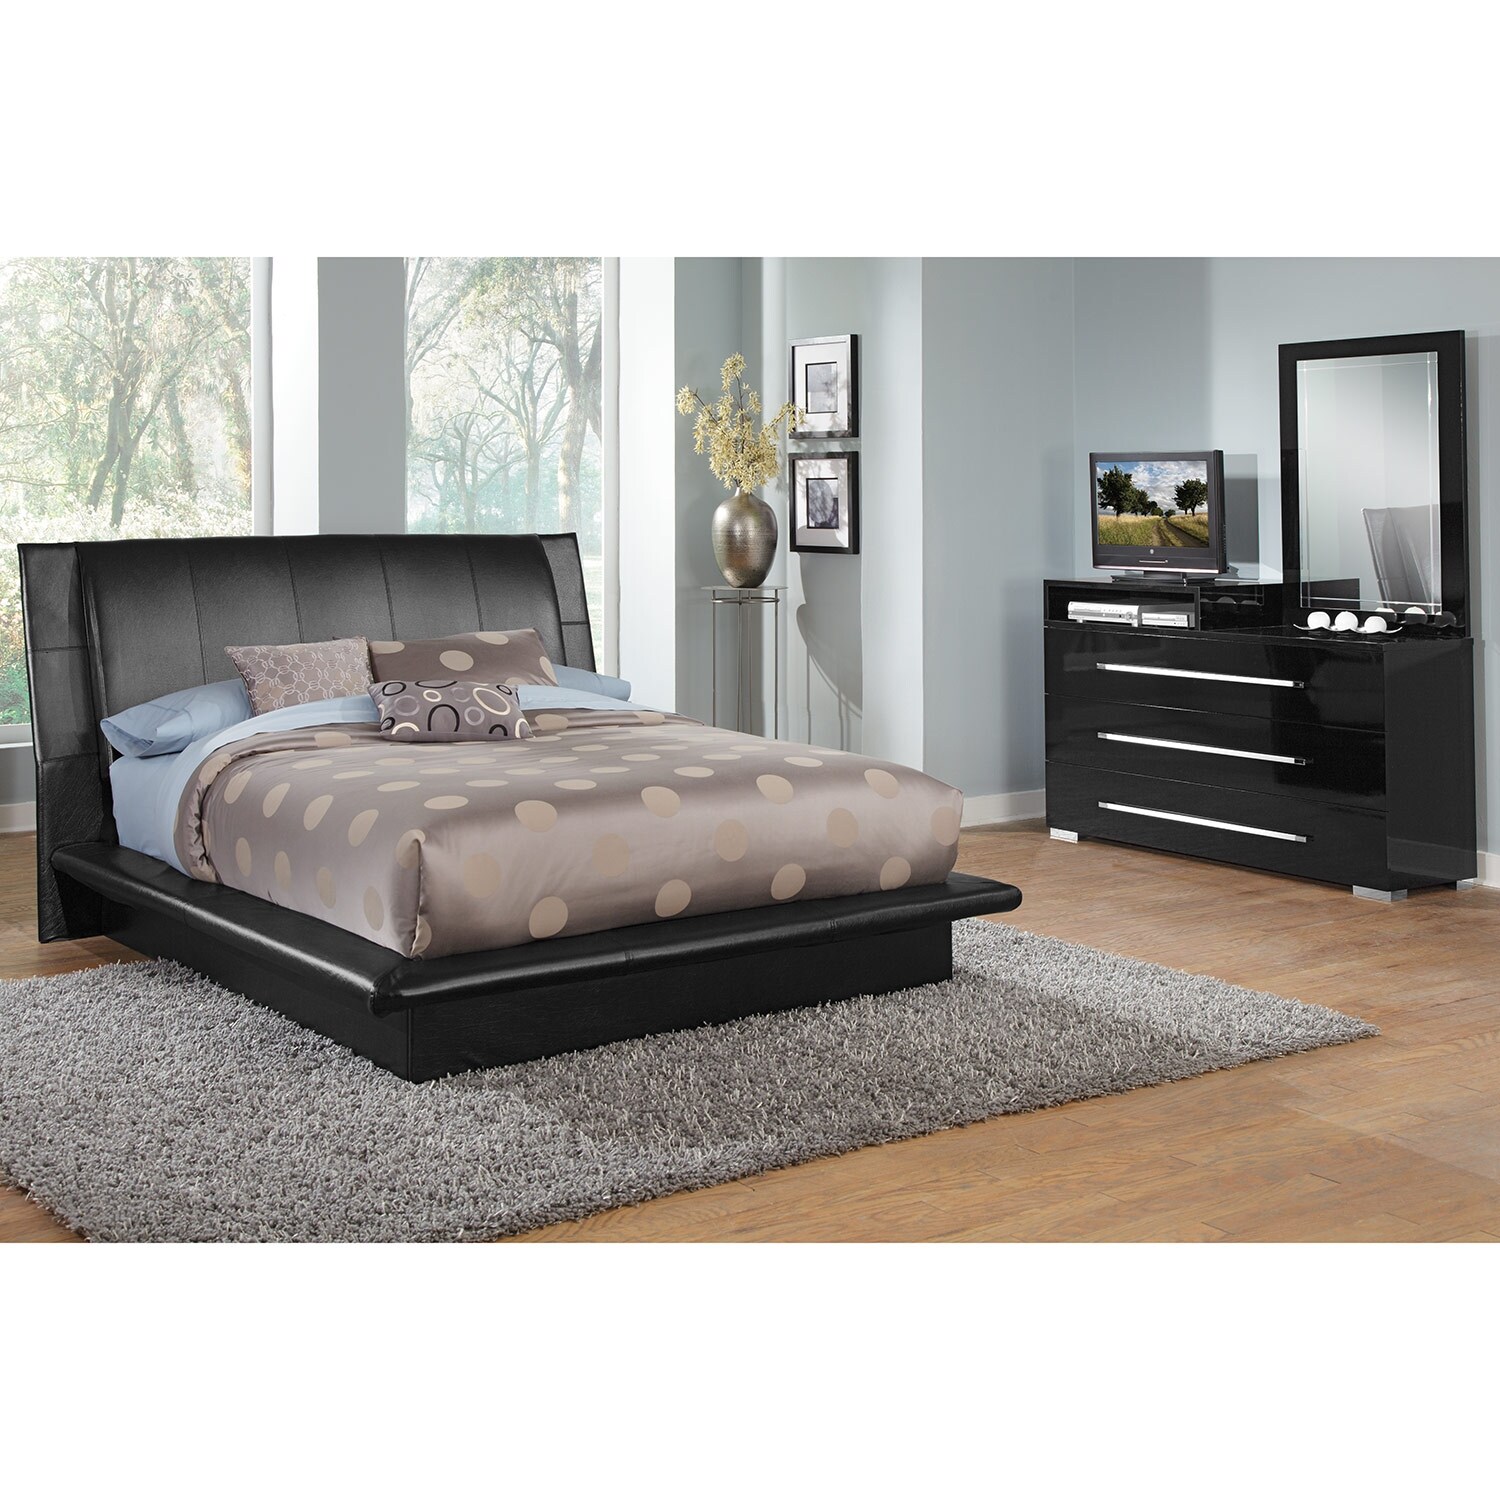 shop 5 piece bedroom sets | value city furniture